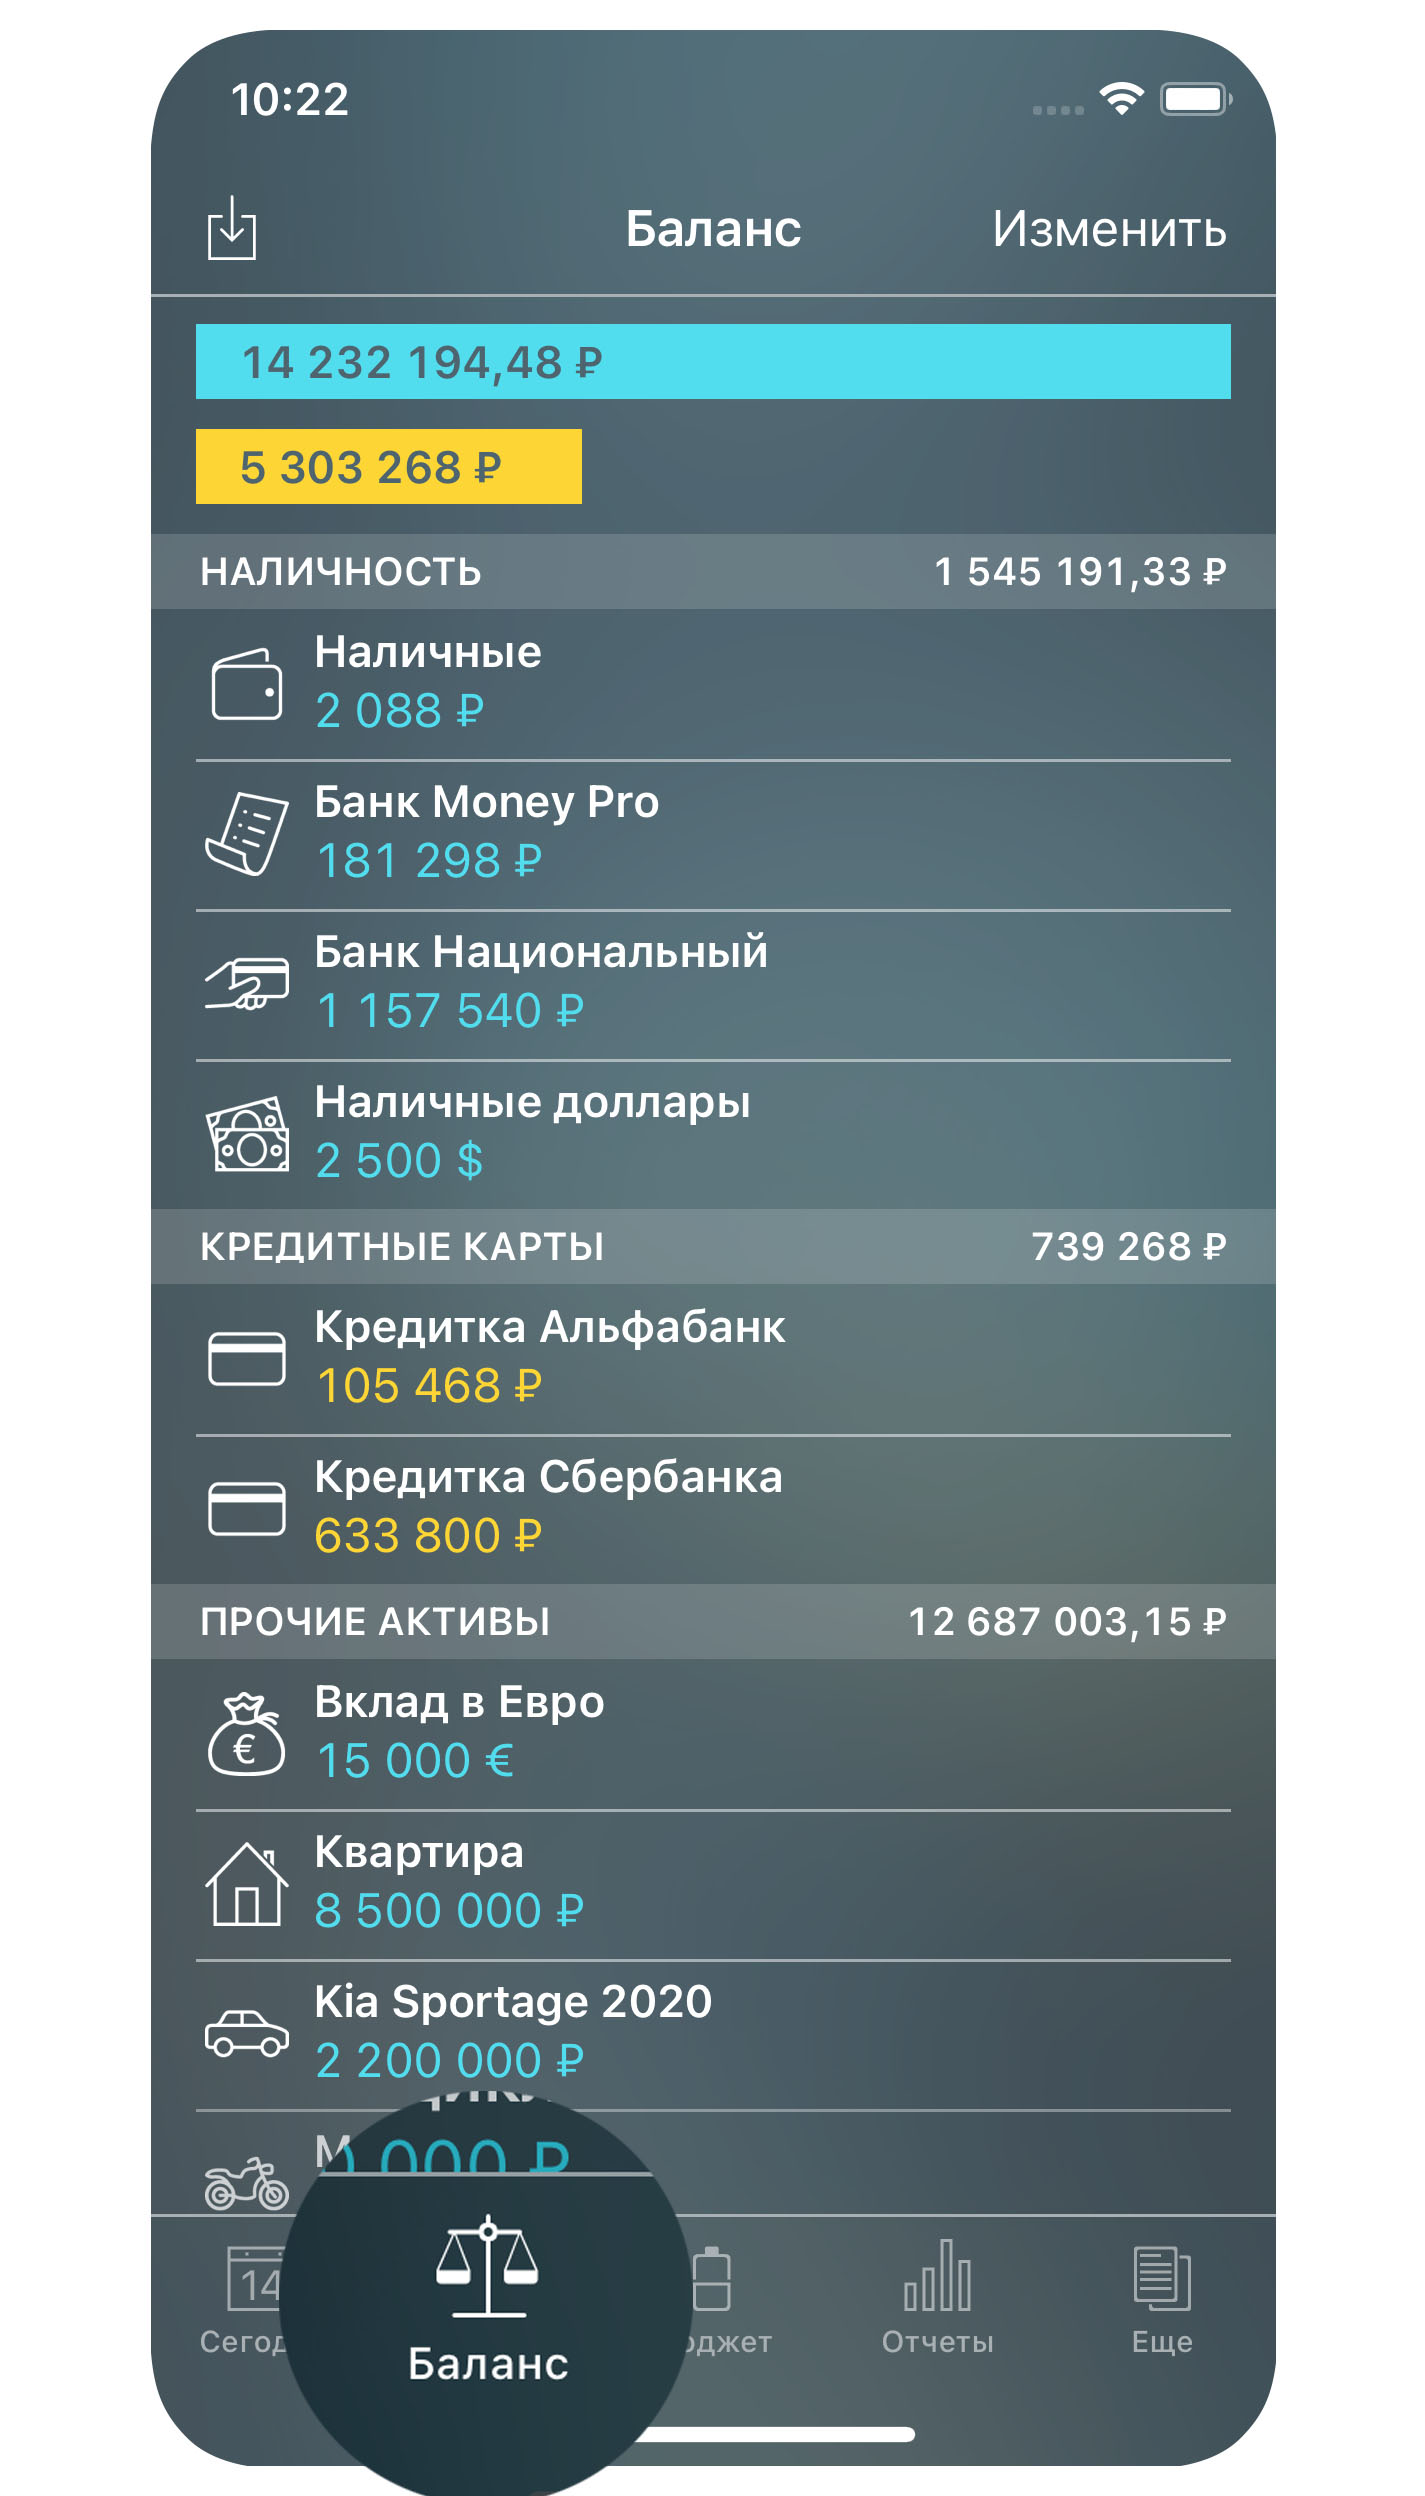 Money Pro - Баланс - iPhone